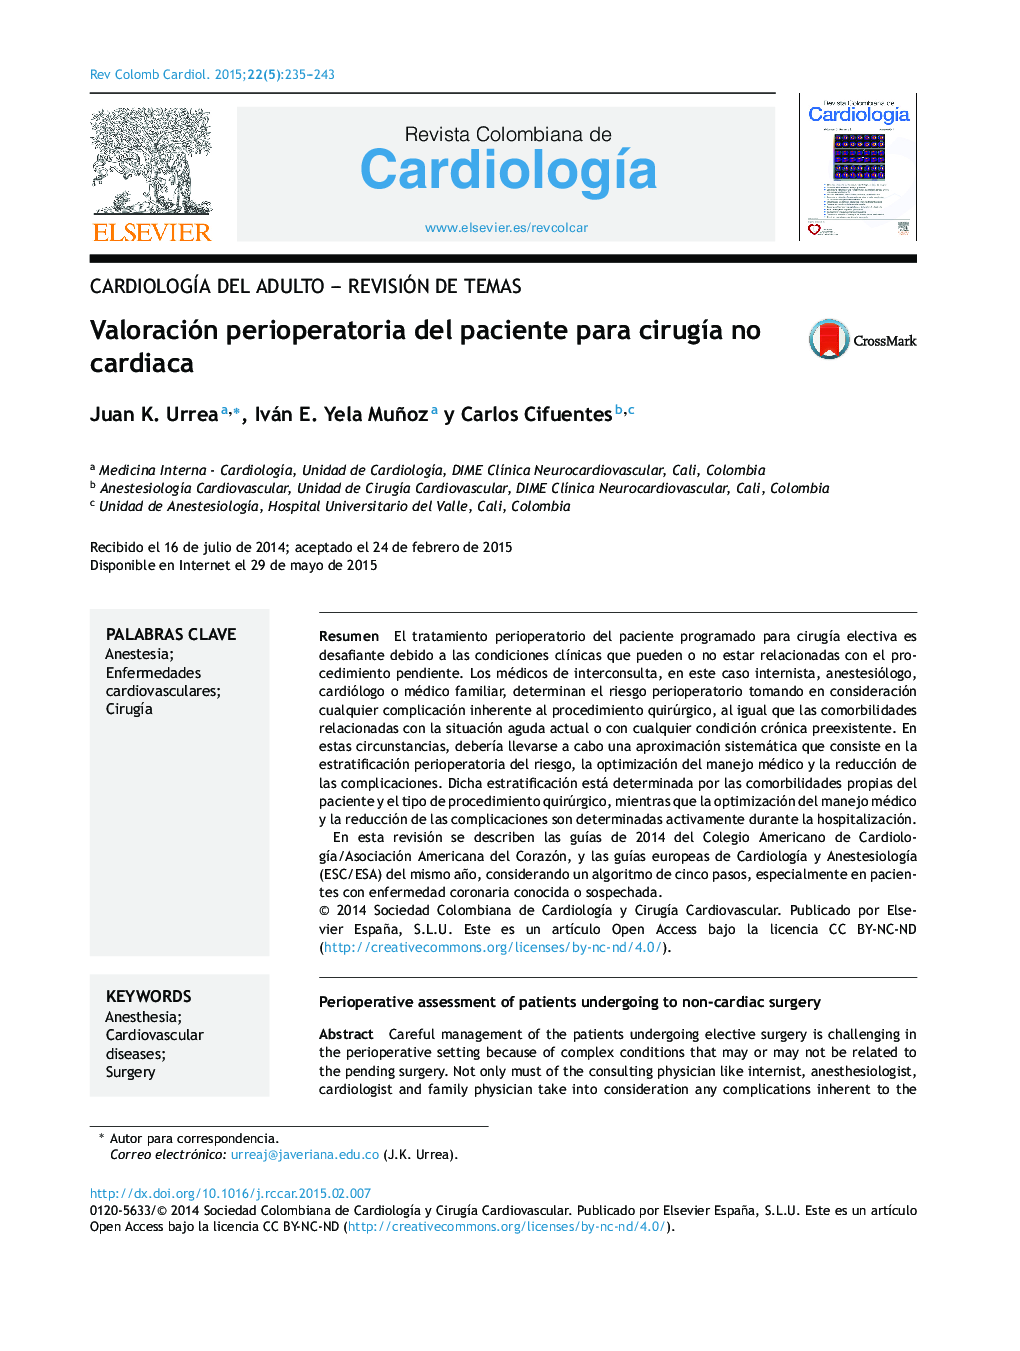 Valoración perioperatoria del paciente para cirugía no cardiaca